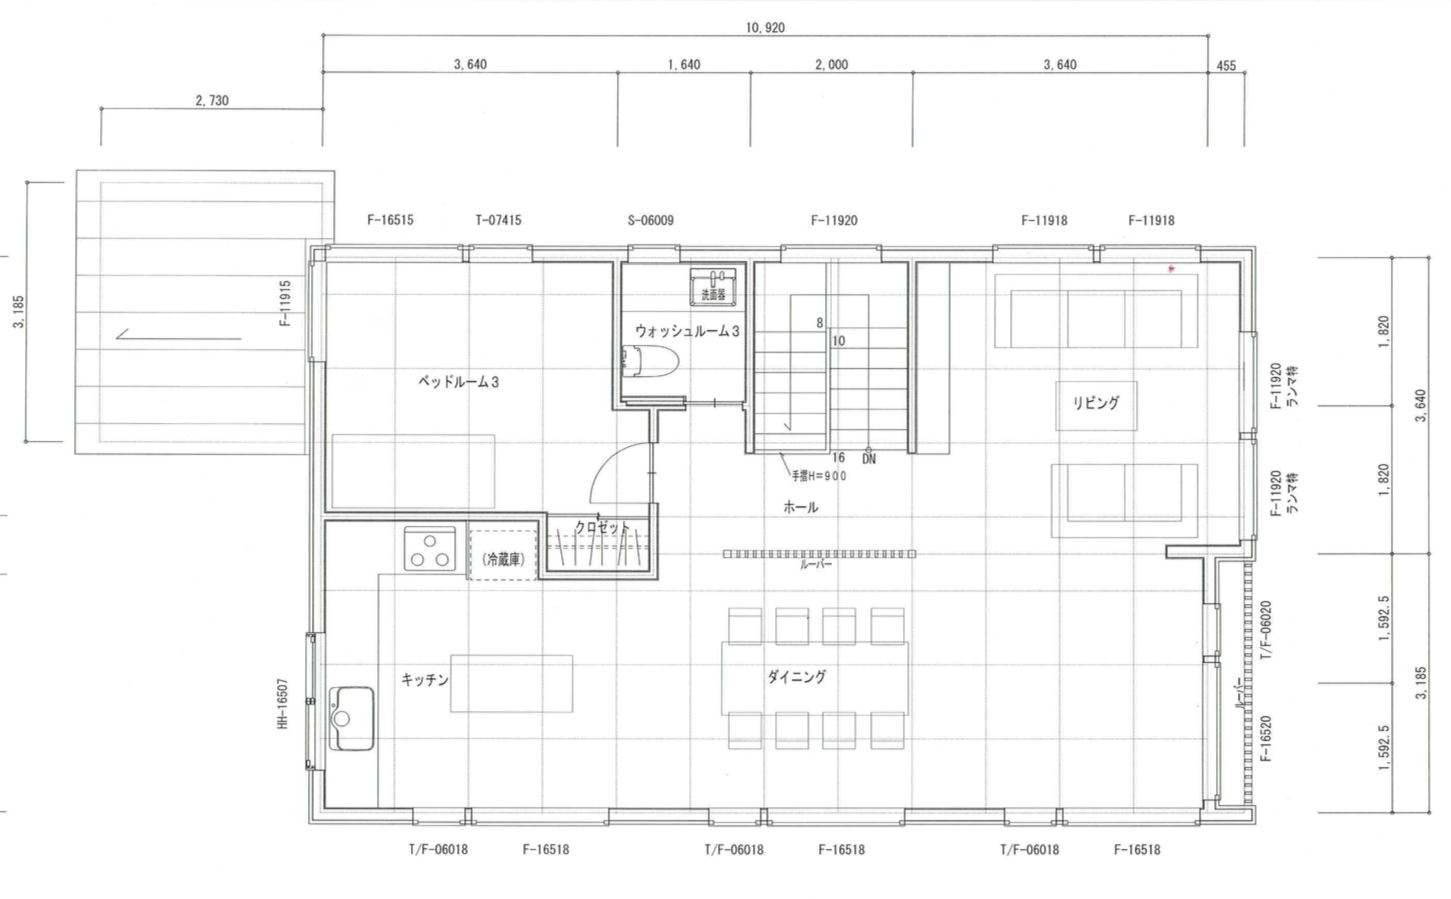 Moraine Chalet Niseko floor plan 2